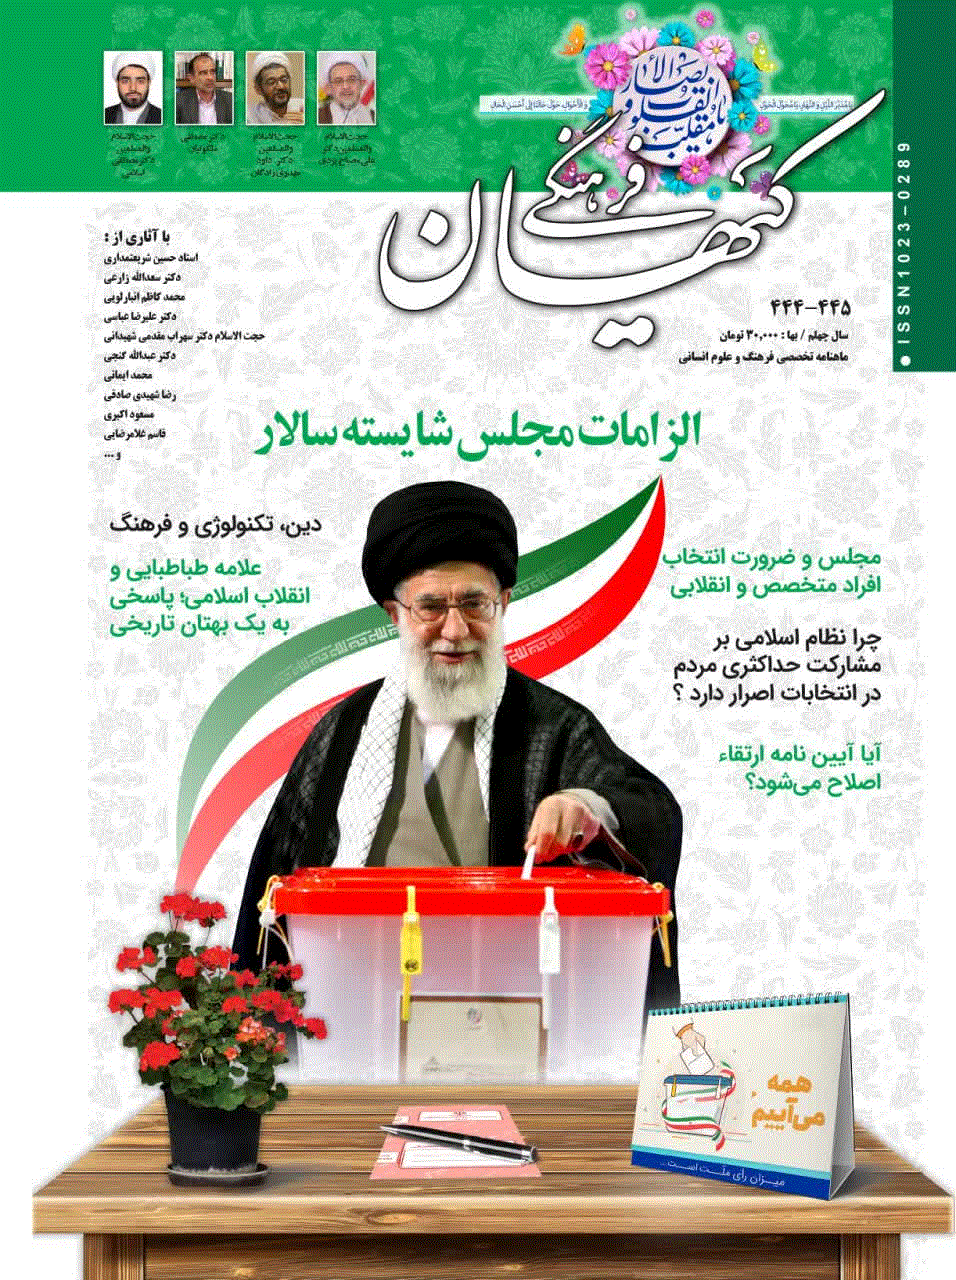 کیهان فرهنگی - تير 1365 - شماره 28